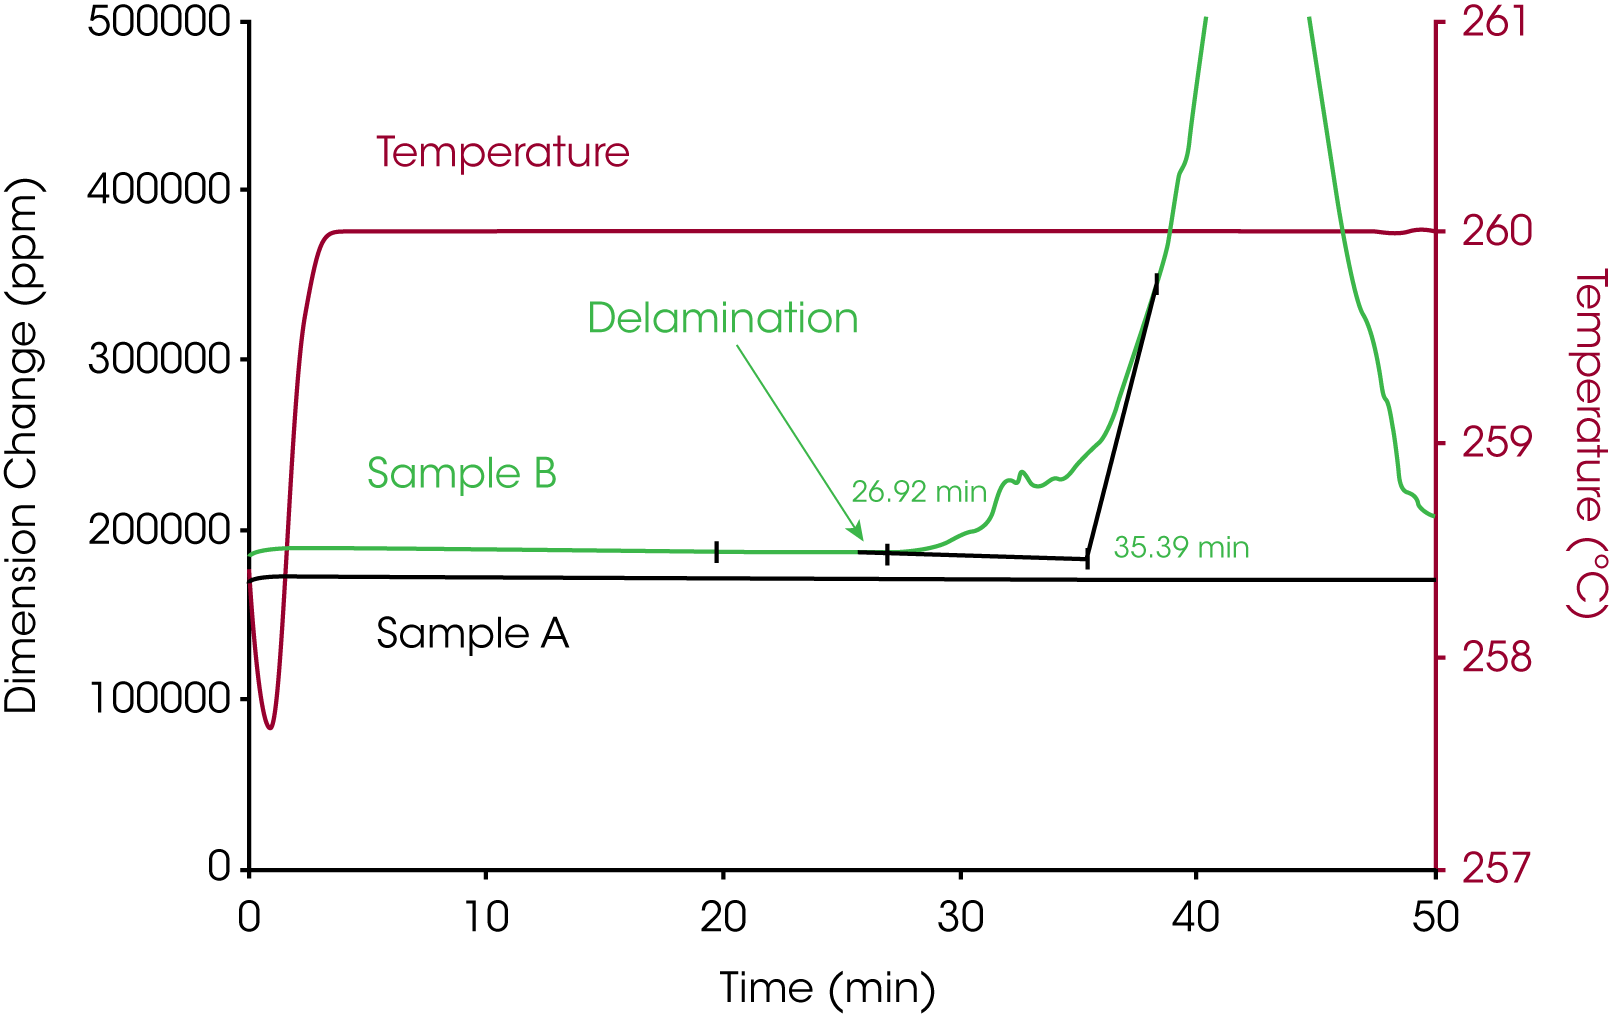 Abbildung 3. Vergleich der thermischen Stabilität von zwei Proben in Zone 3